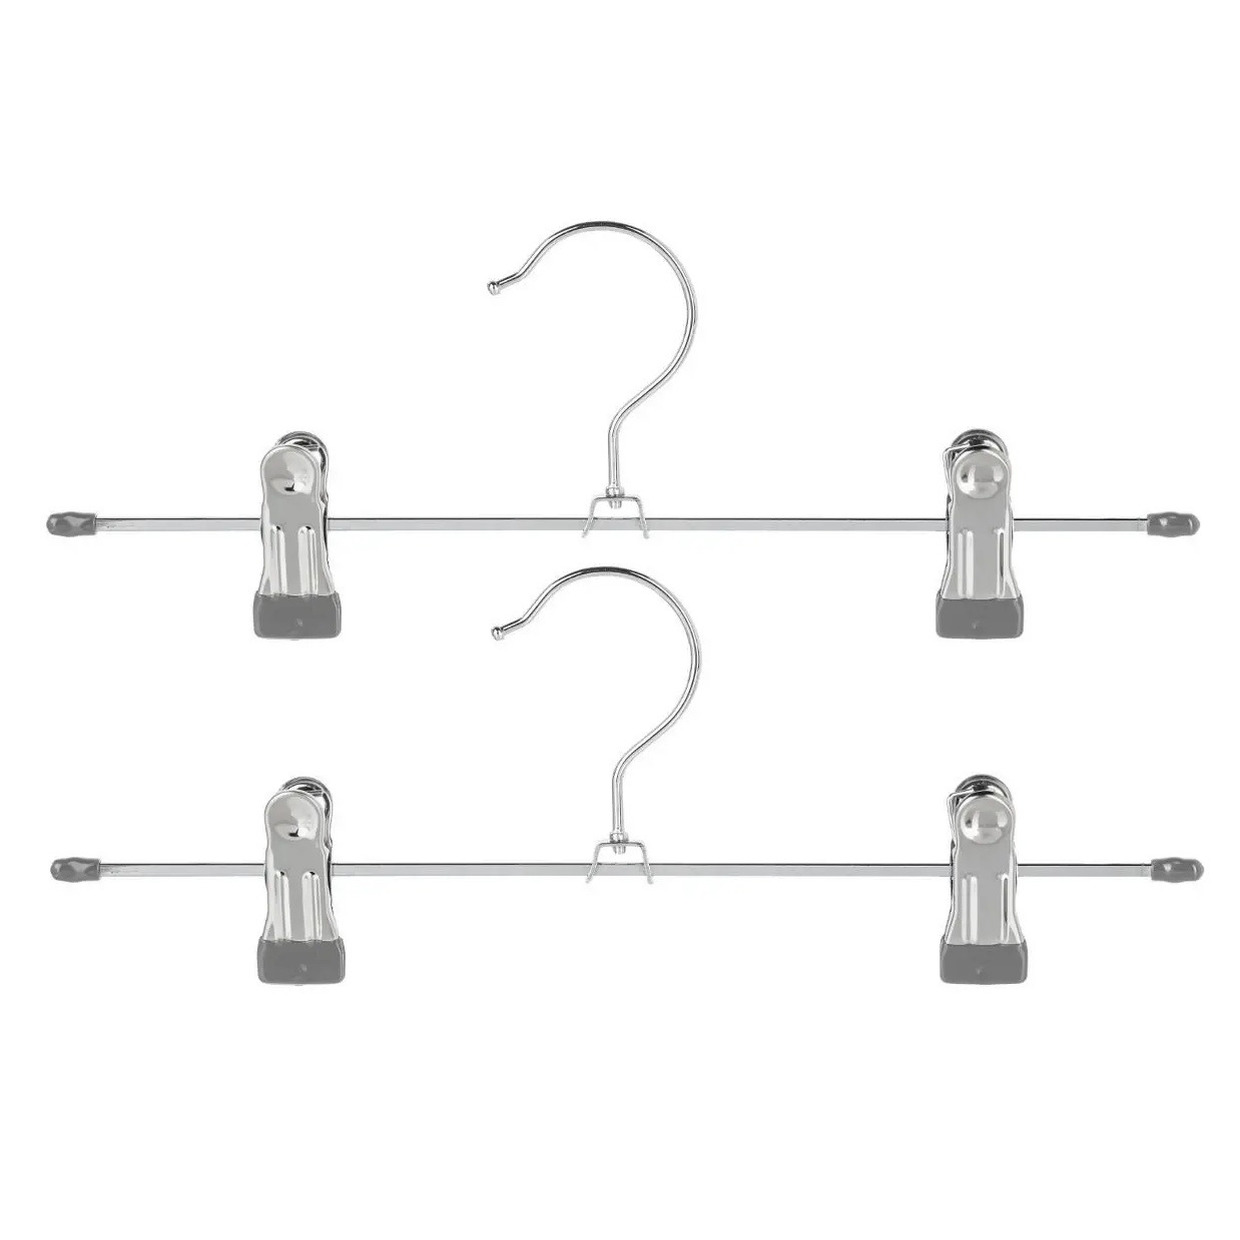 Set van 6x stuks metalen kledinghangers voor broeken 30 x 11 cm - Kledingkast hangers/kleerhangers/broekhangers